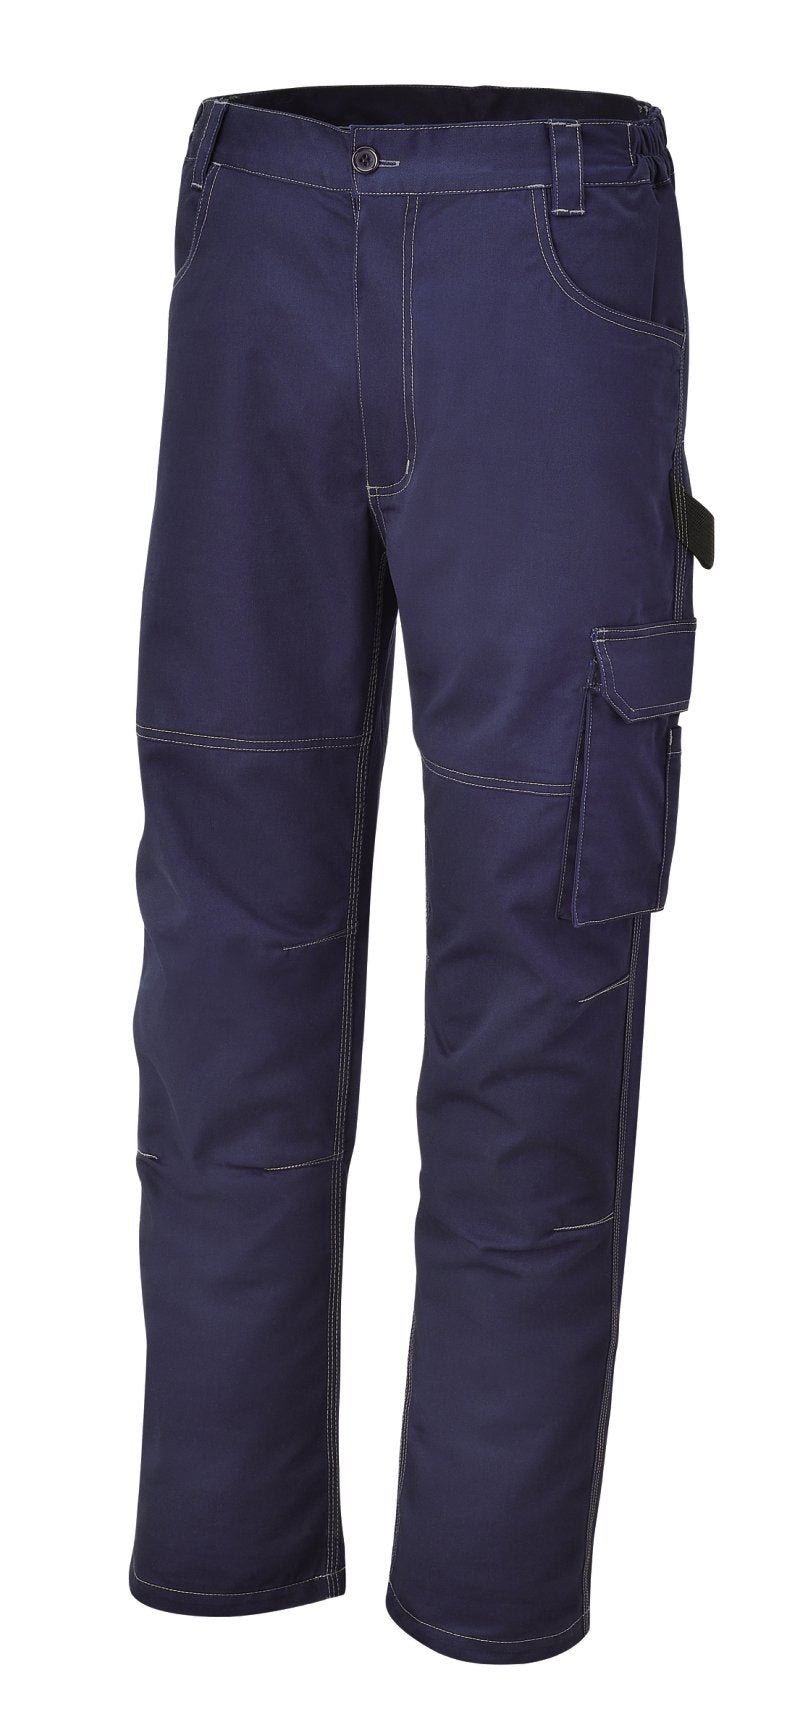 7840BL - Work trousers, T/C twill, 245 g/m2, blue